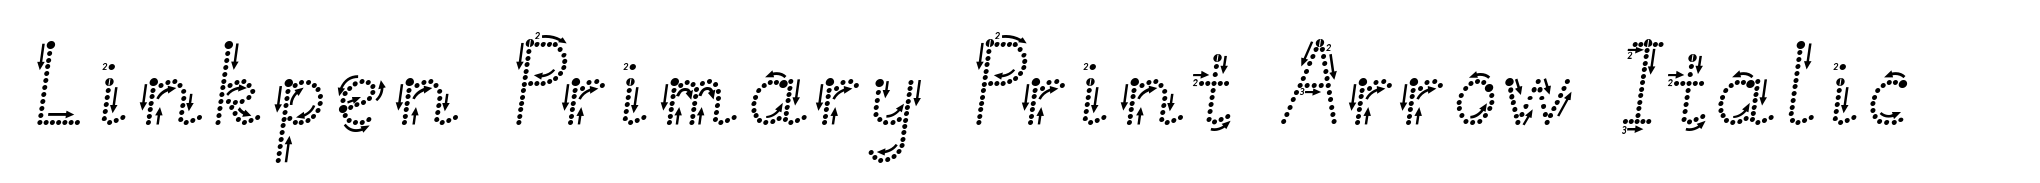 Linkpen Primary Print Arrow Italic image